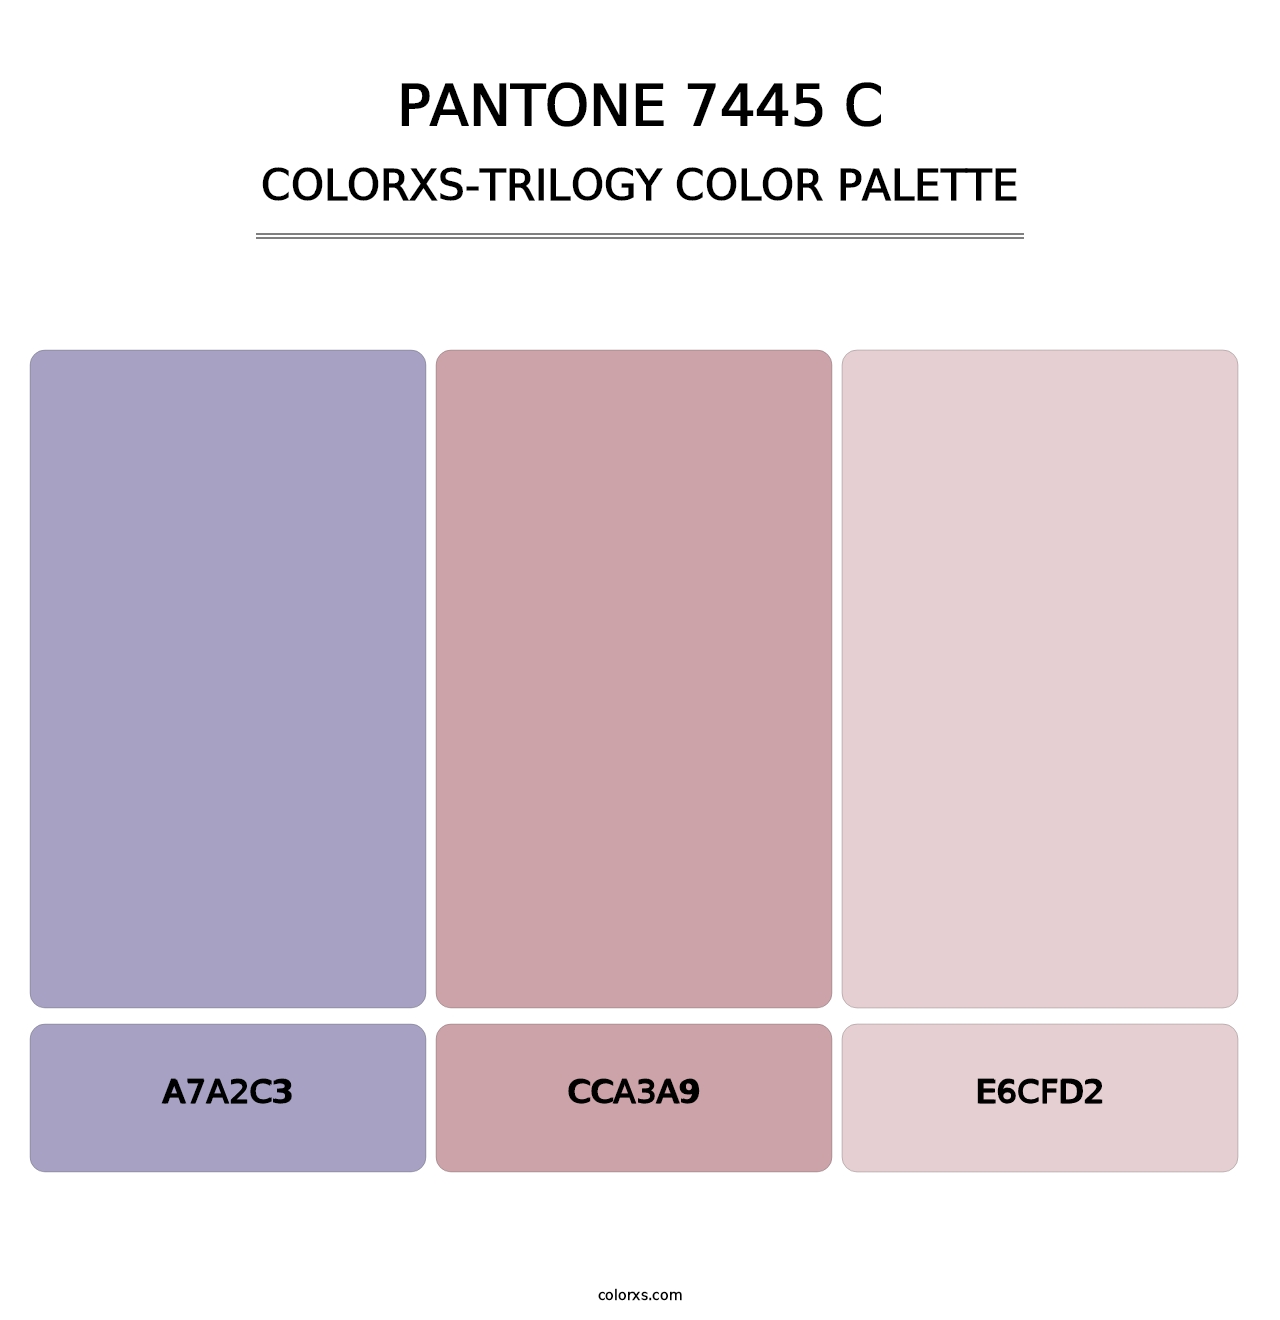 PANTONE 7445 C - Colorxs Trilogy Palette